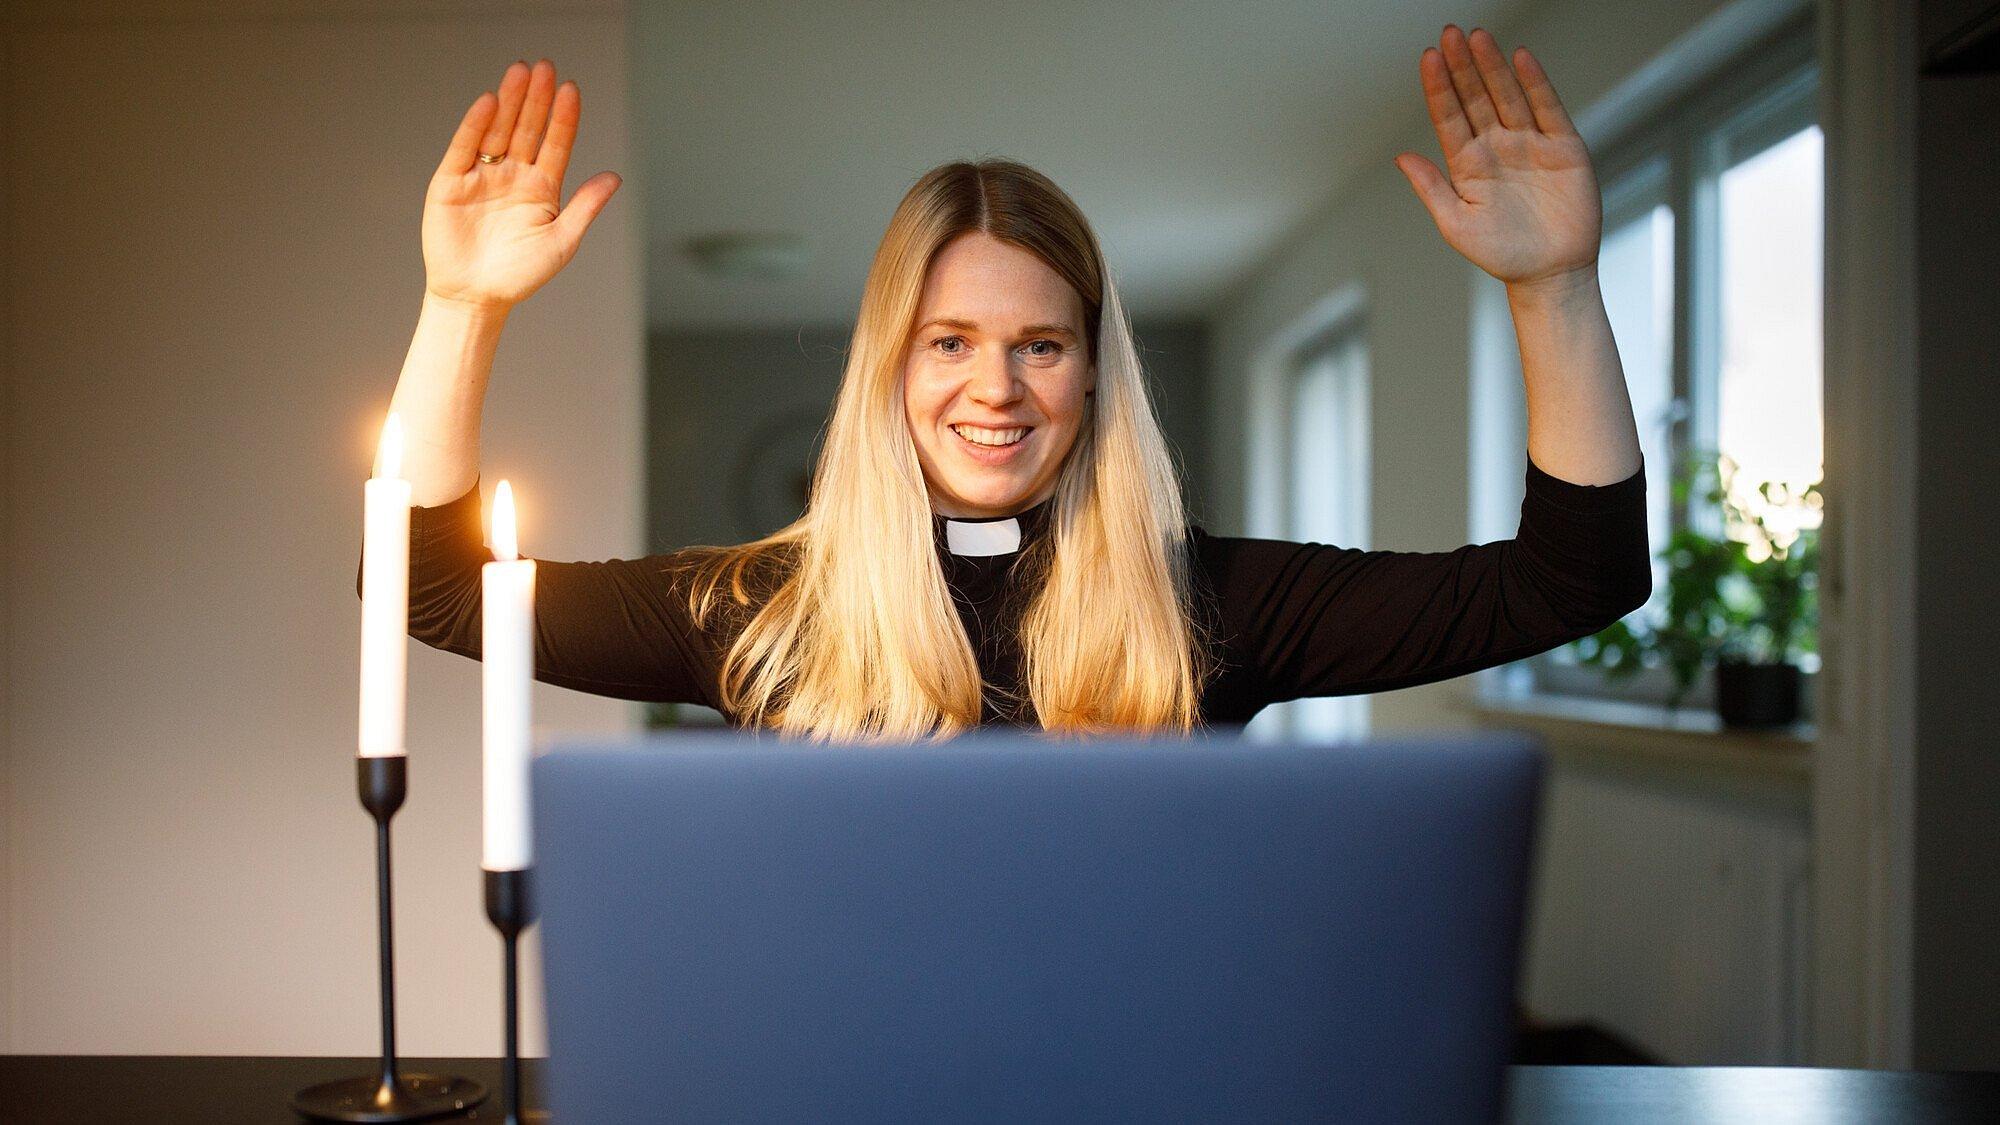 Eine Pfarrerin hält ihre Arme zum Segen hoch während eines Online-Gottesdienstes und schaut in eine Laptop.  Zwei Kerzen brenen neben ihr auf dem Tisch.E